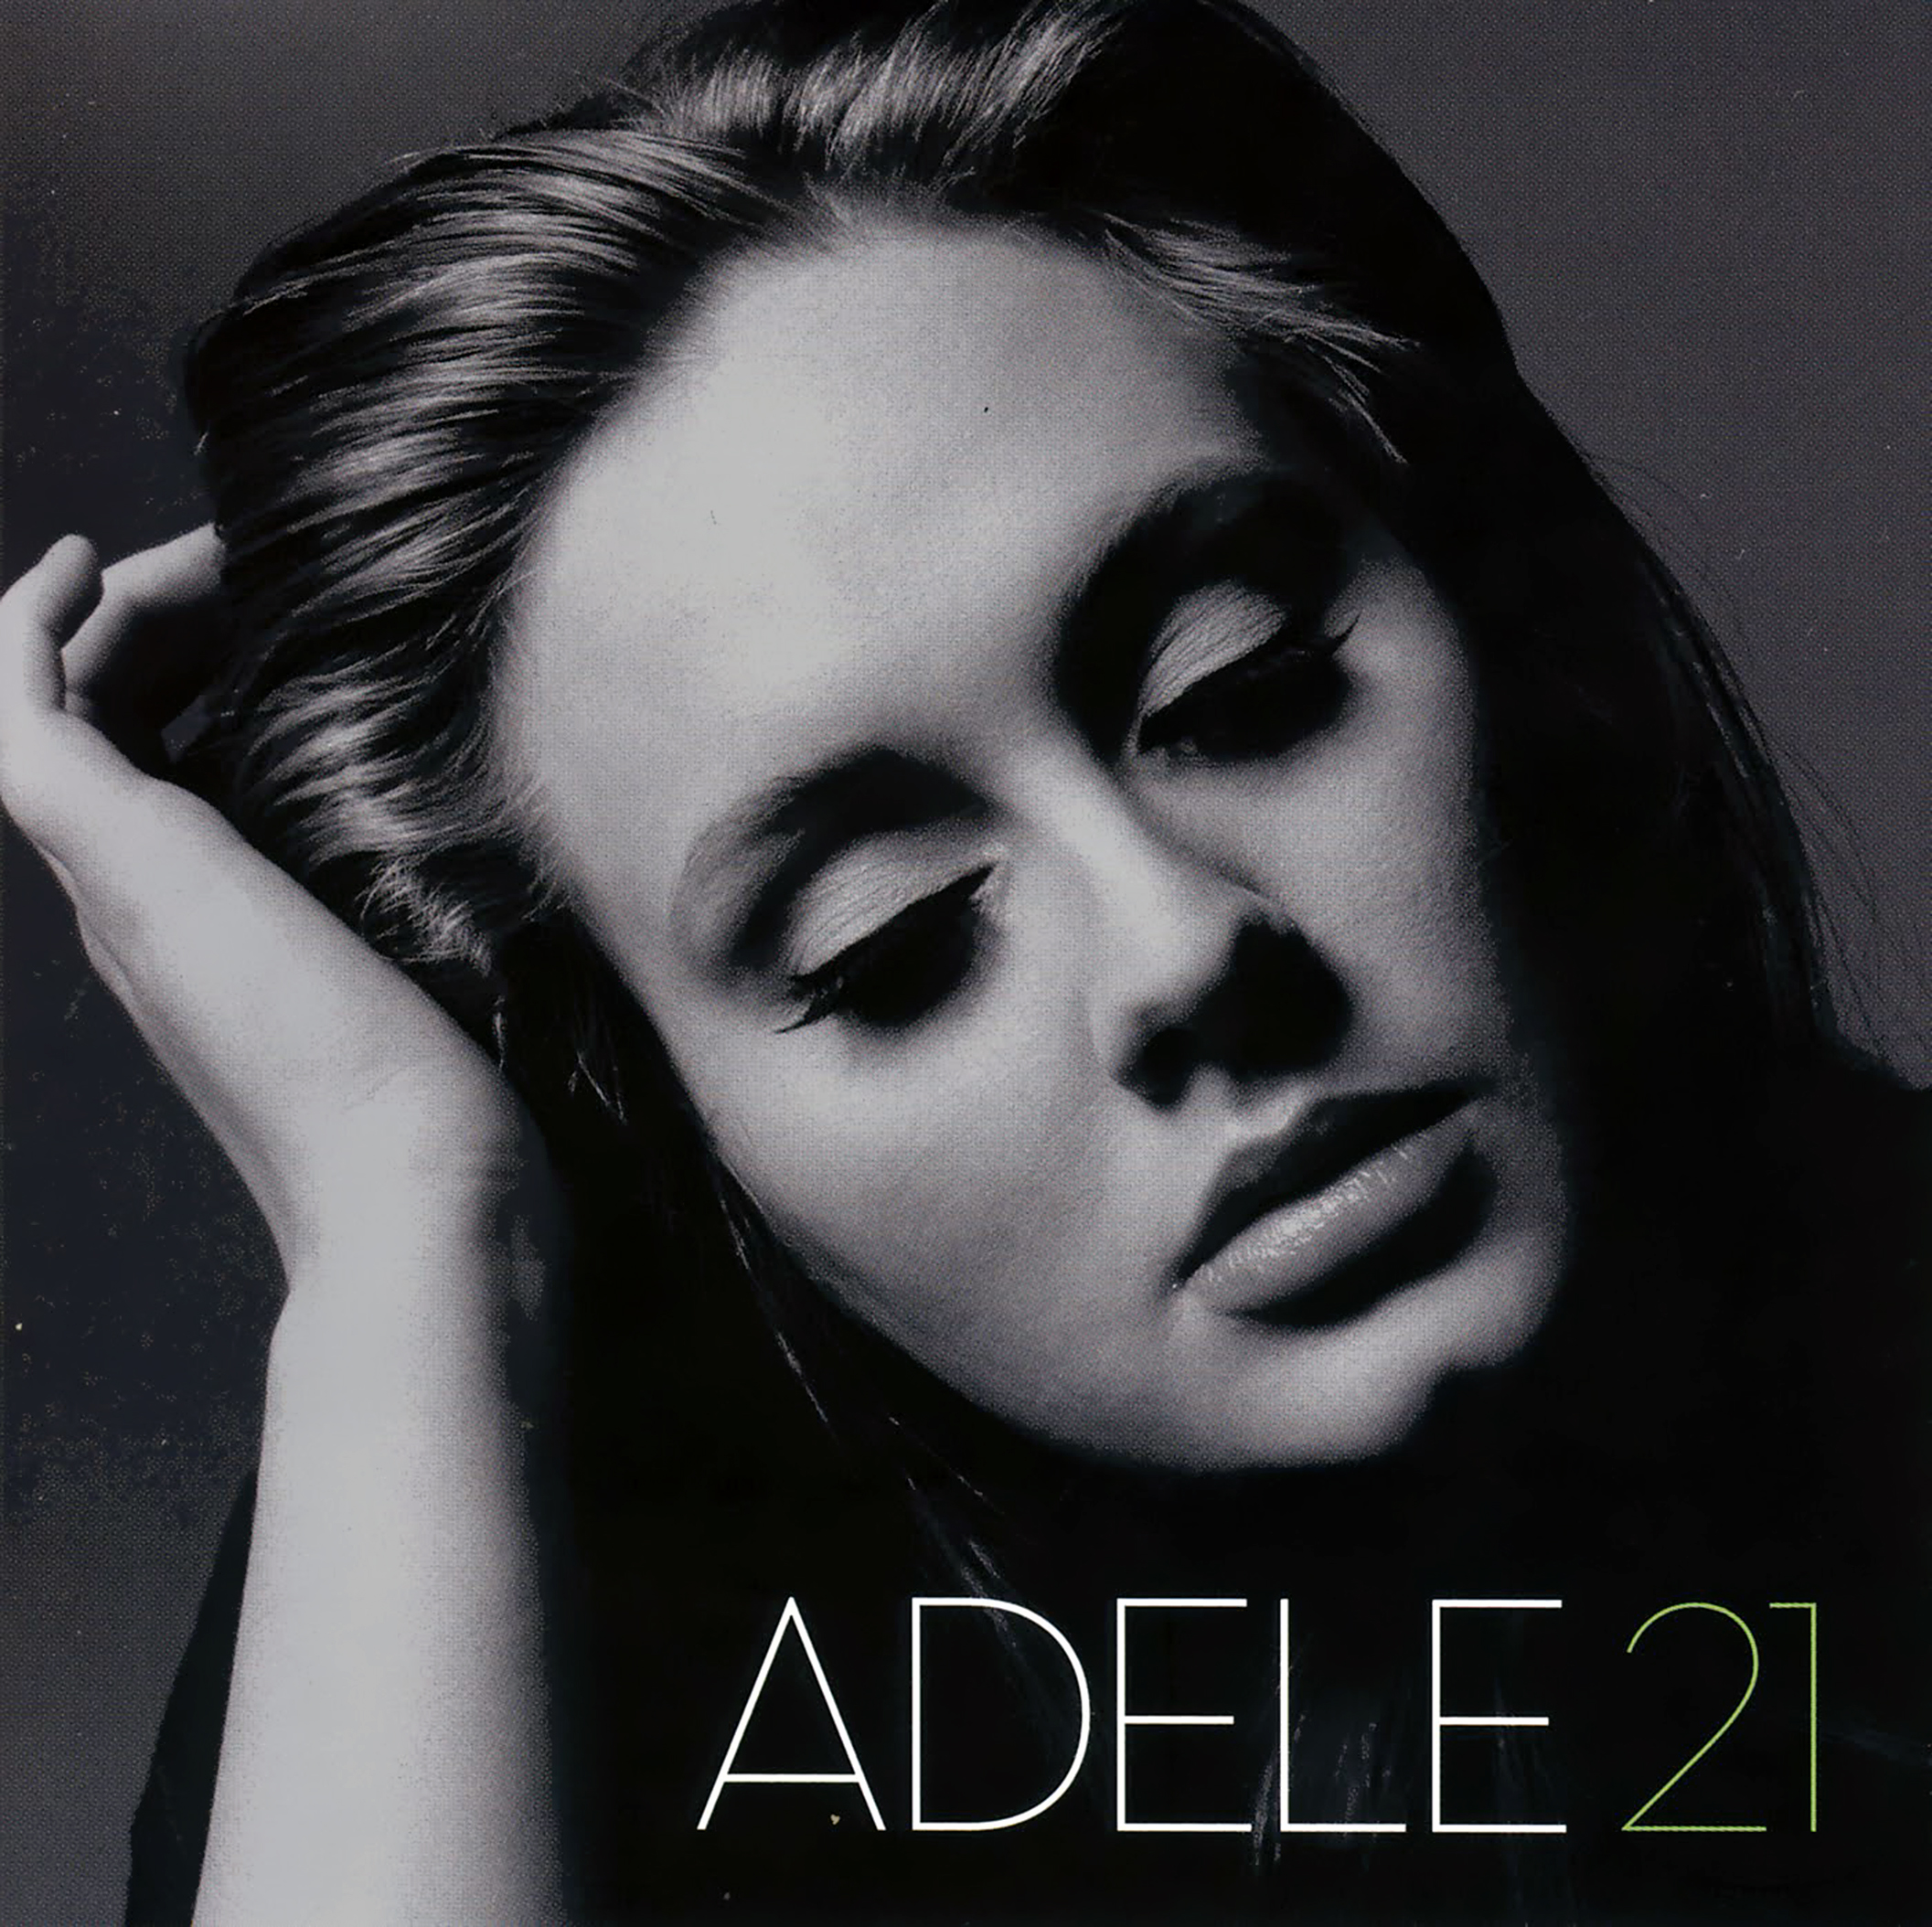 Adele - 21 - (CD)